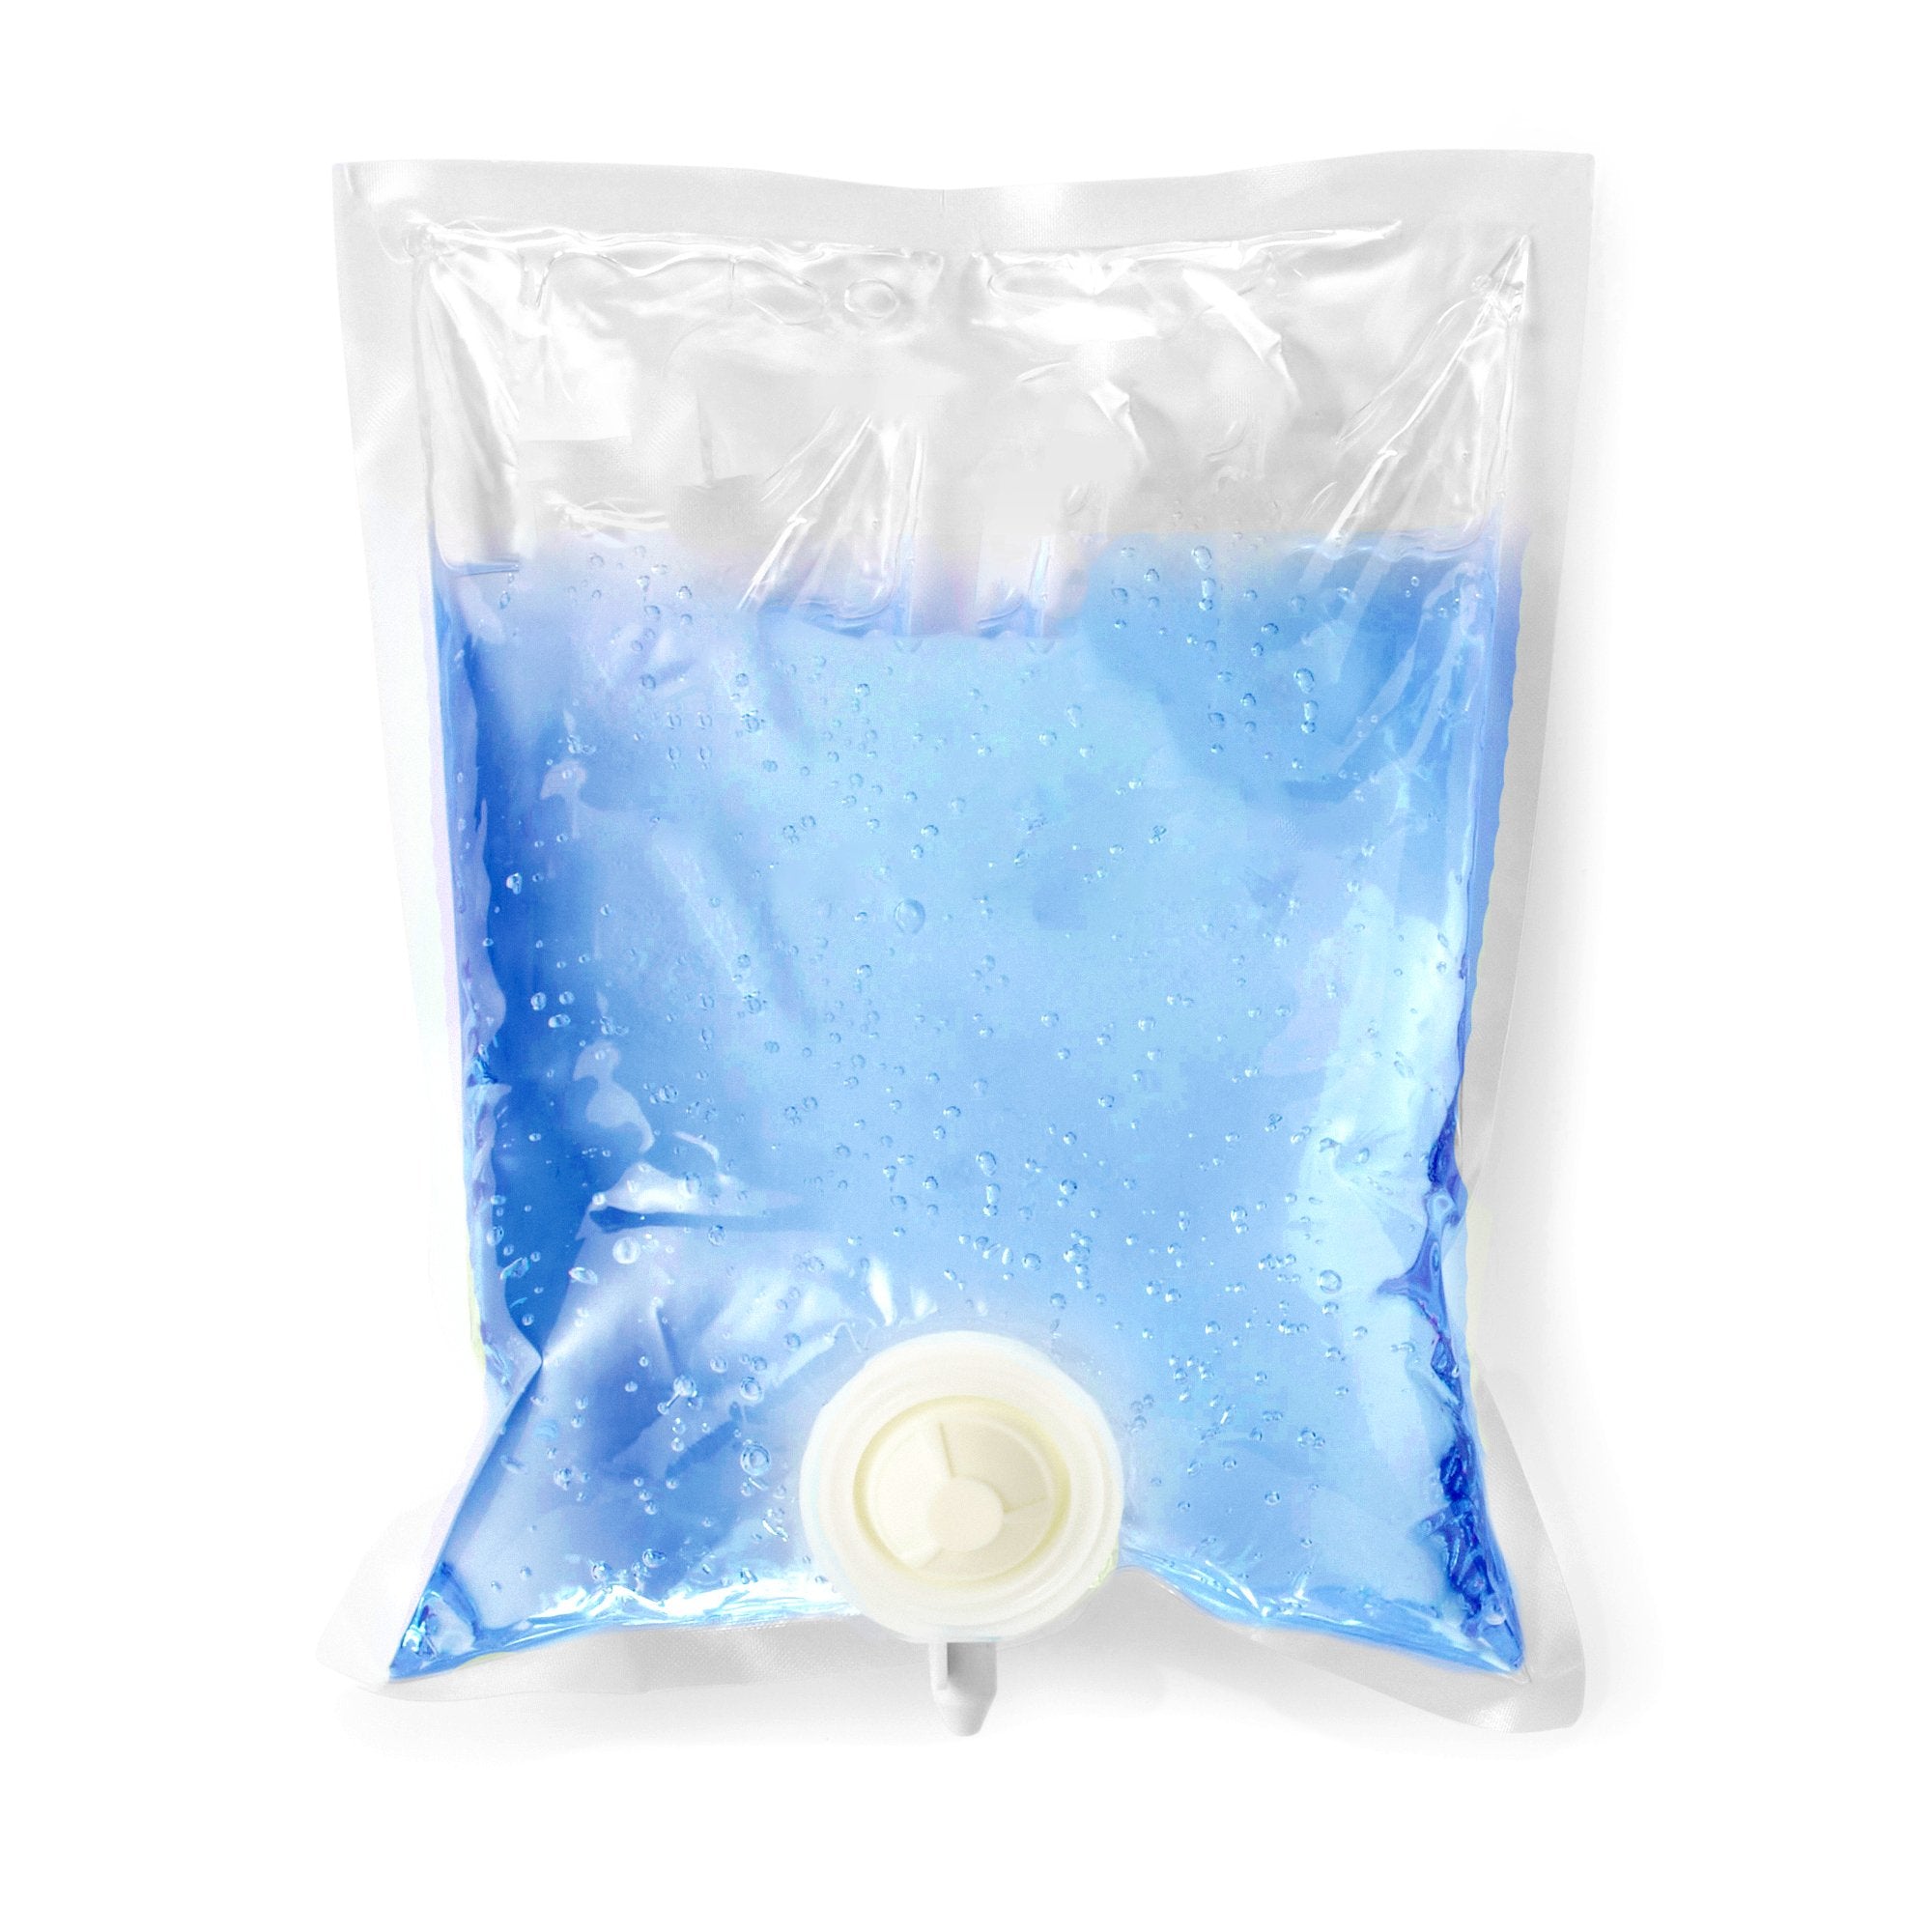 Hand Sanitizer McKesson Premium 1,000 mL Ethyl Alcohol Gel Dispenser Refill Bag